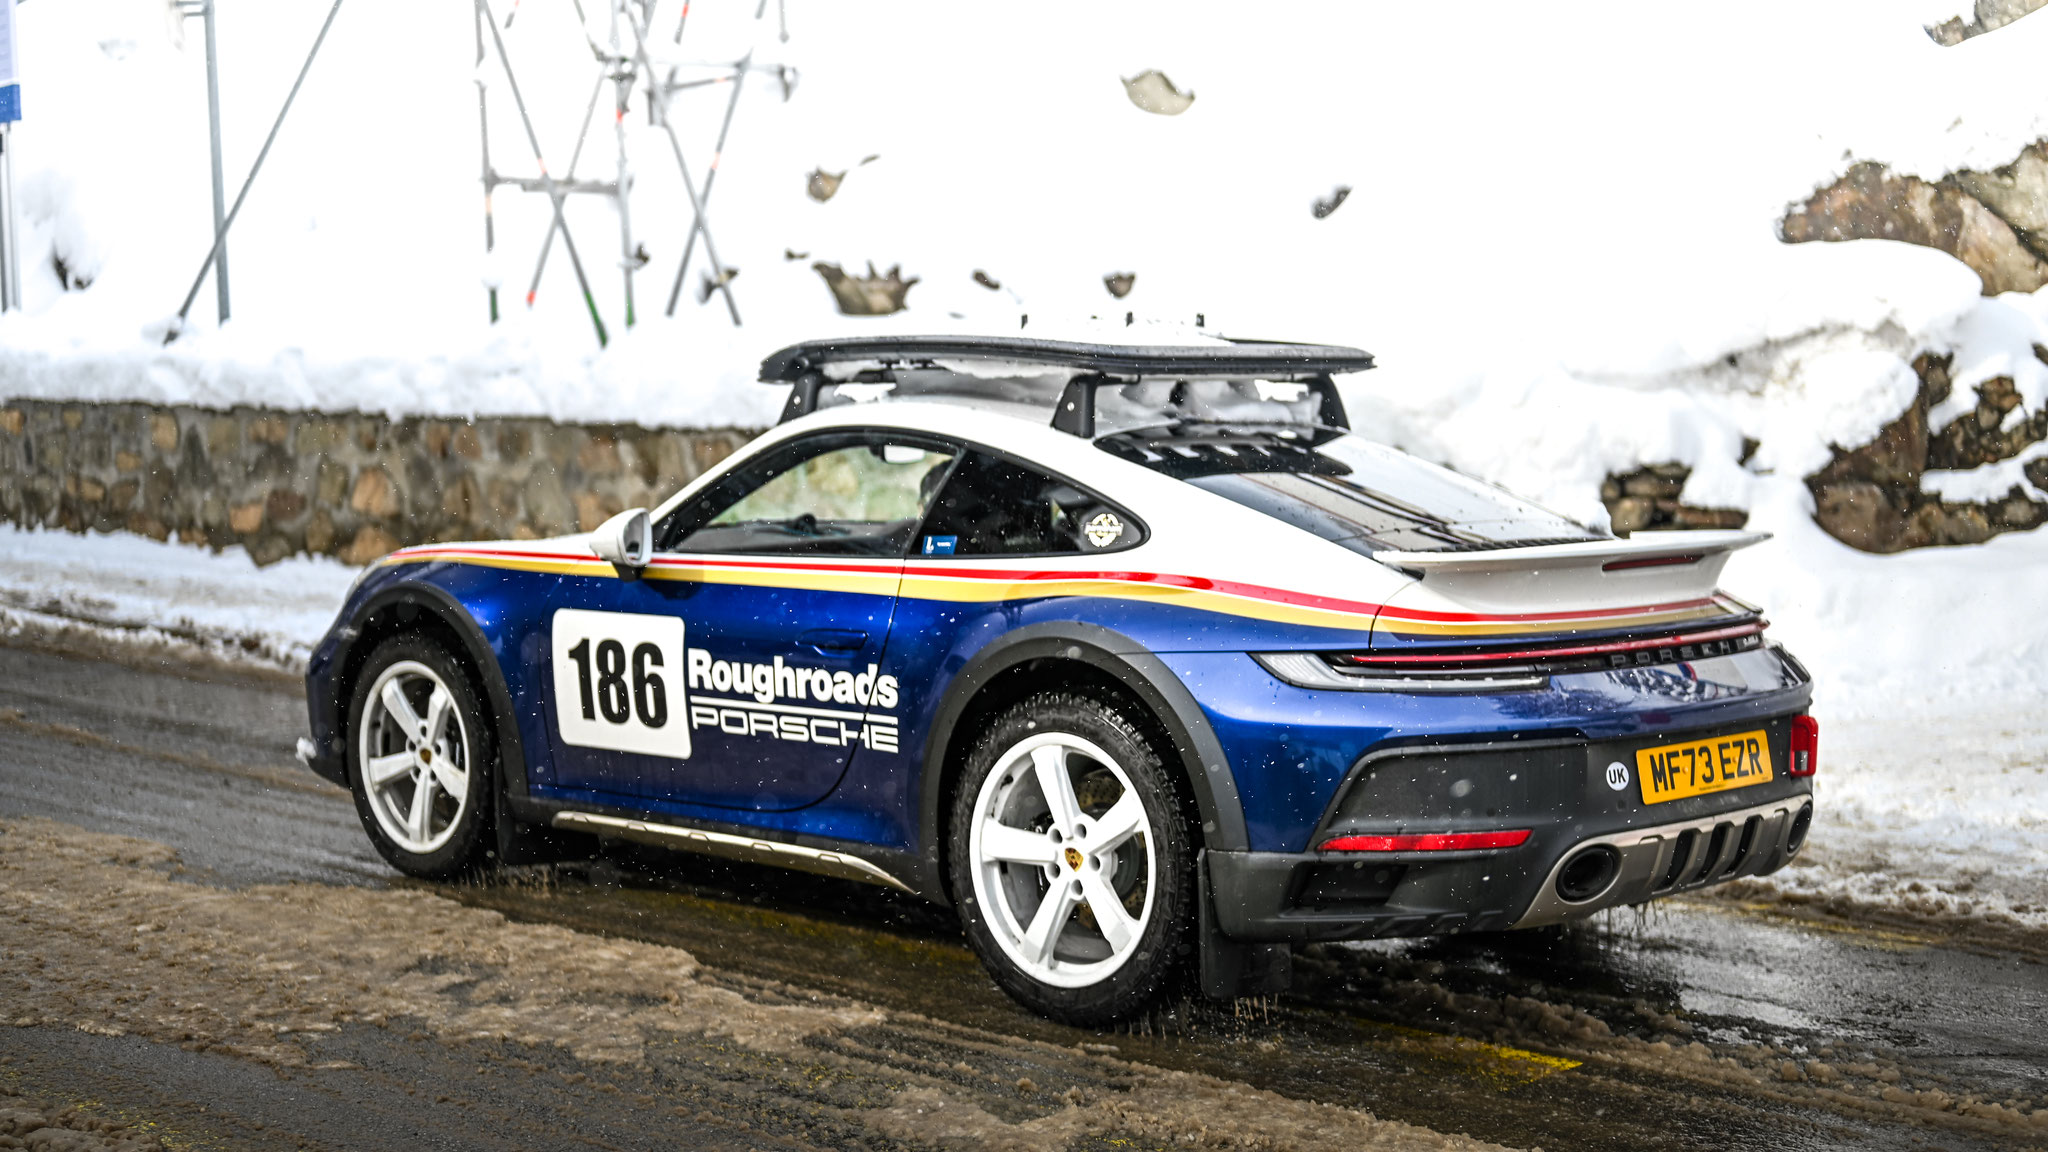 Porsche 911 Dakar - MF73EZR (GB)